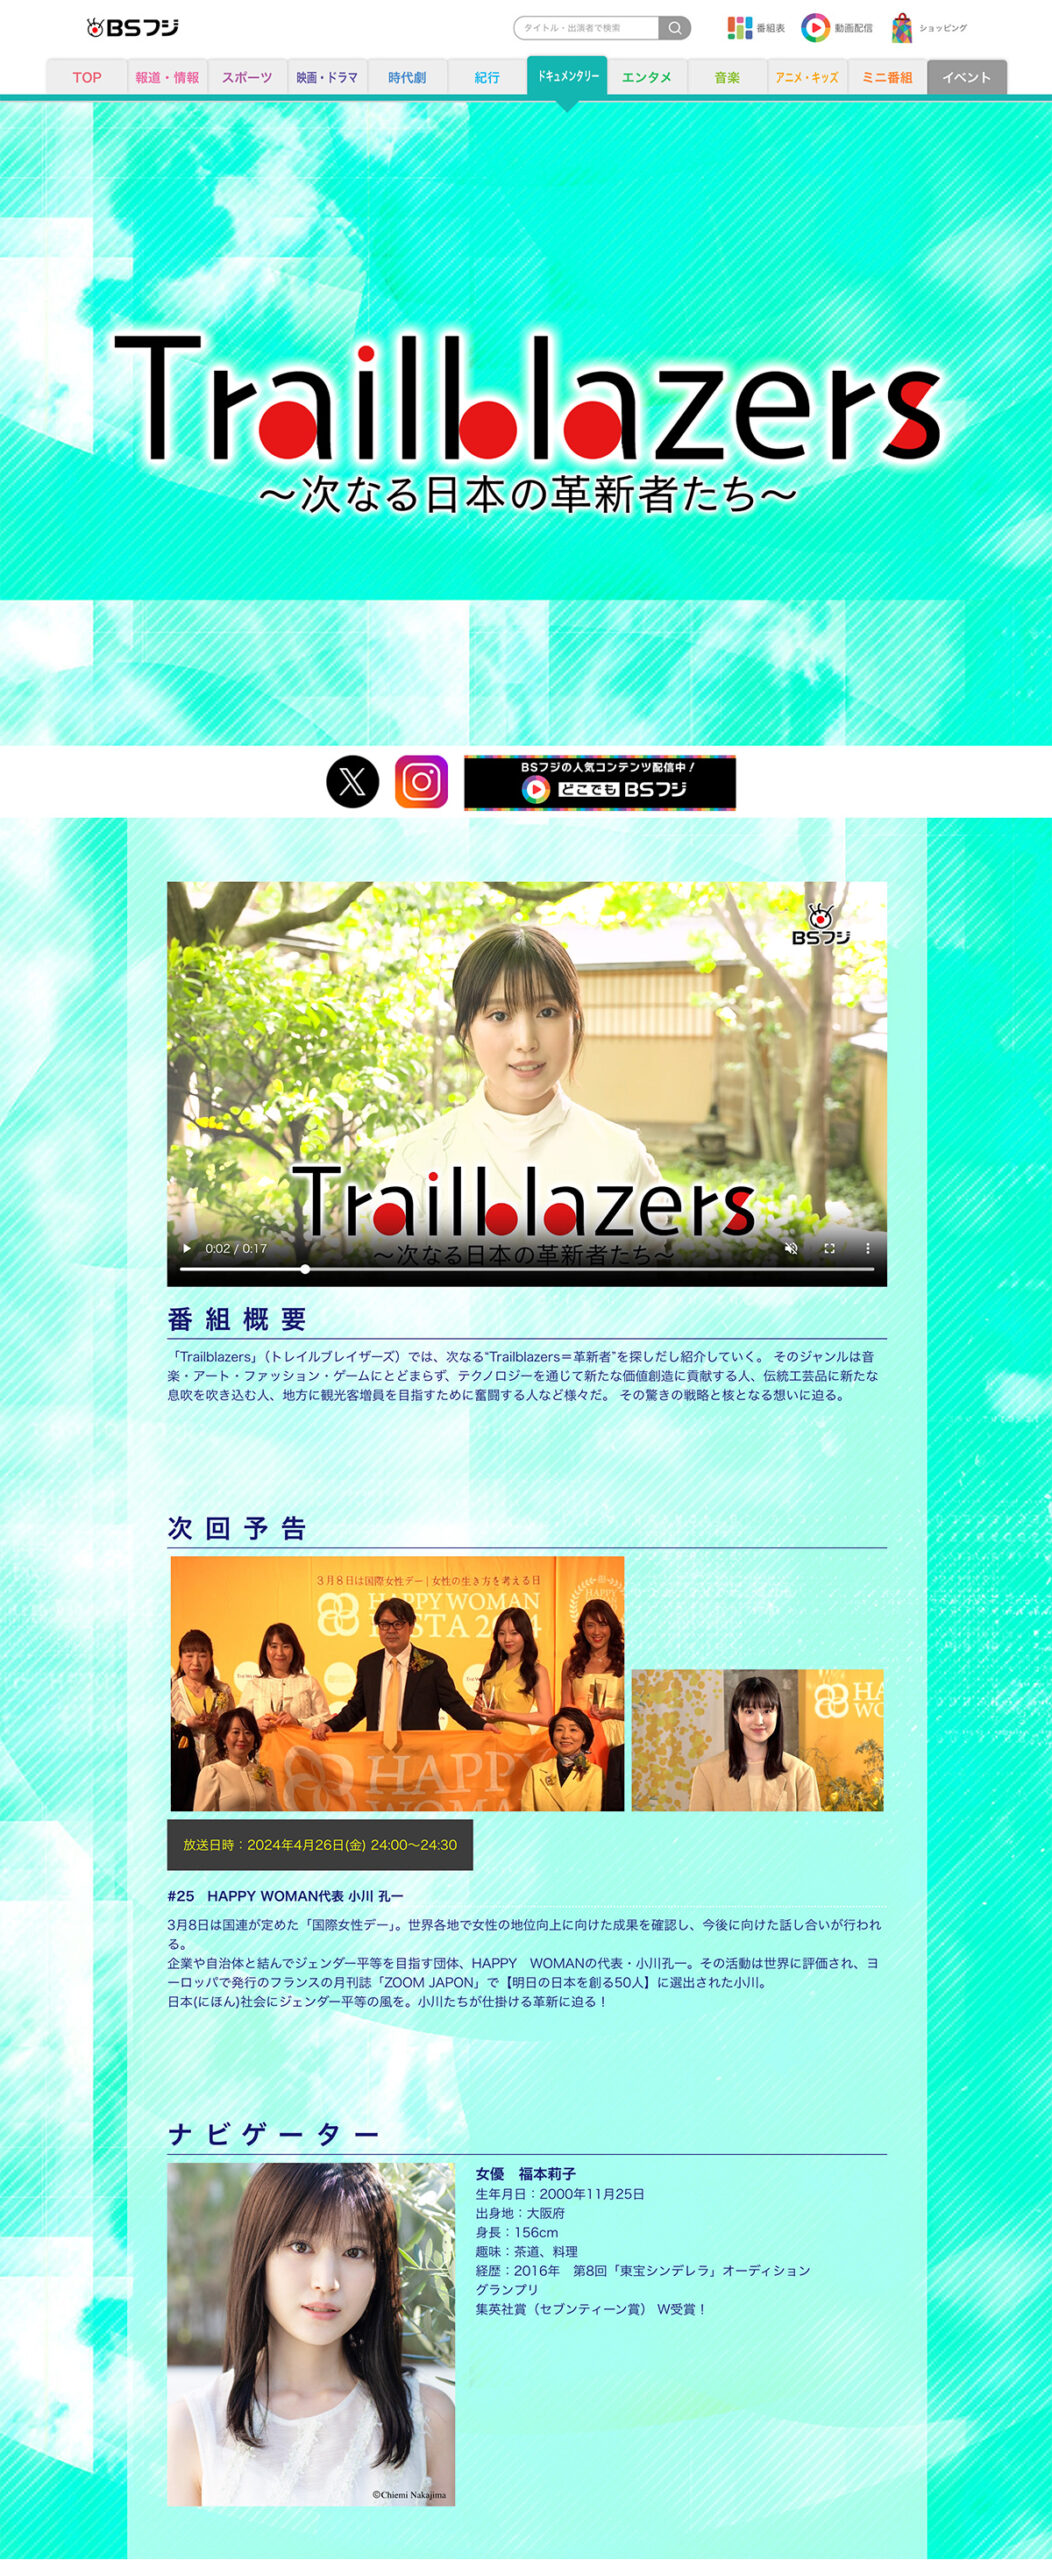 テレビ番組「Trailblazers～次なる日本の革新者たち～」公式サイト